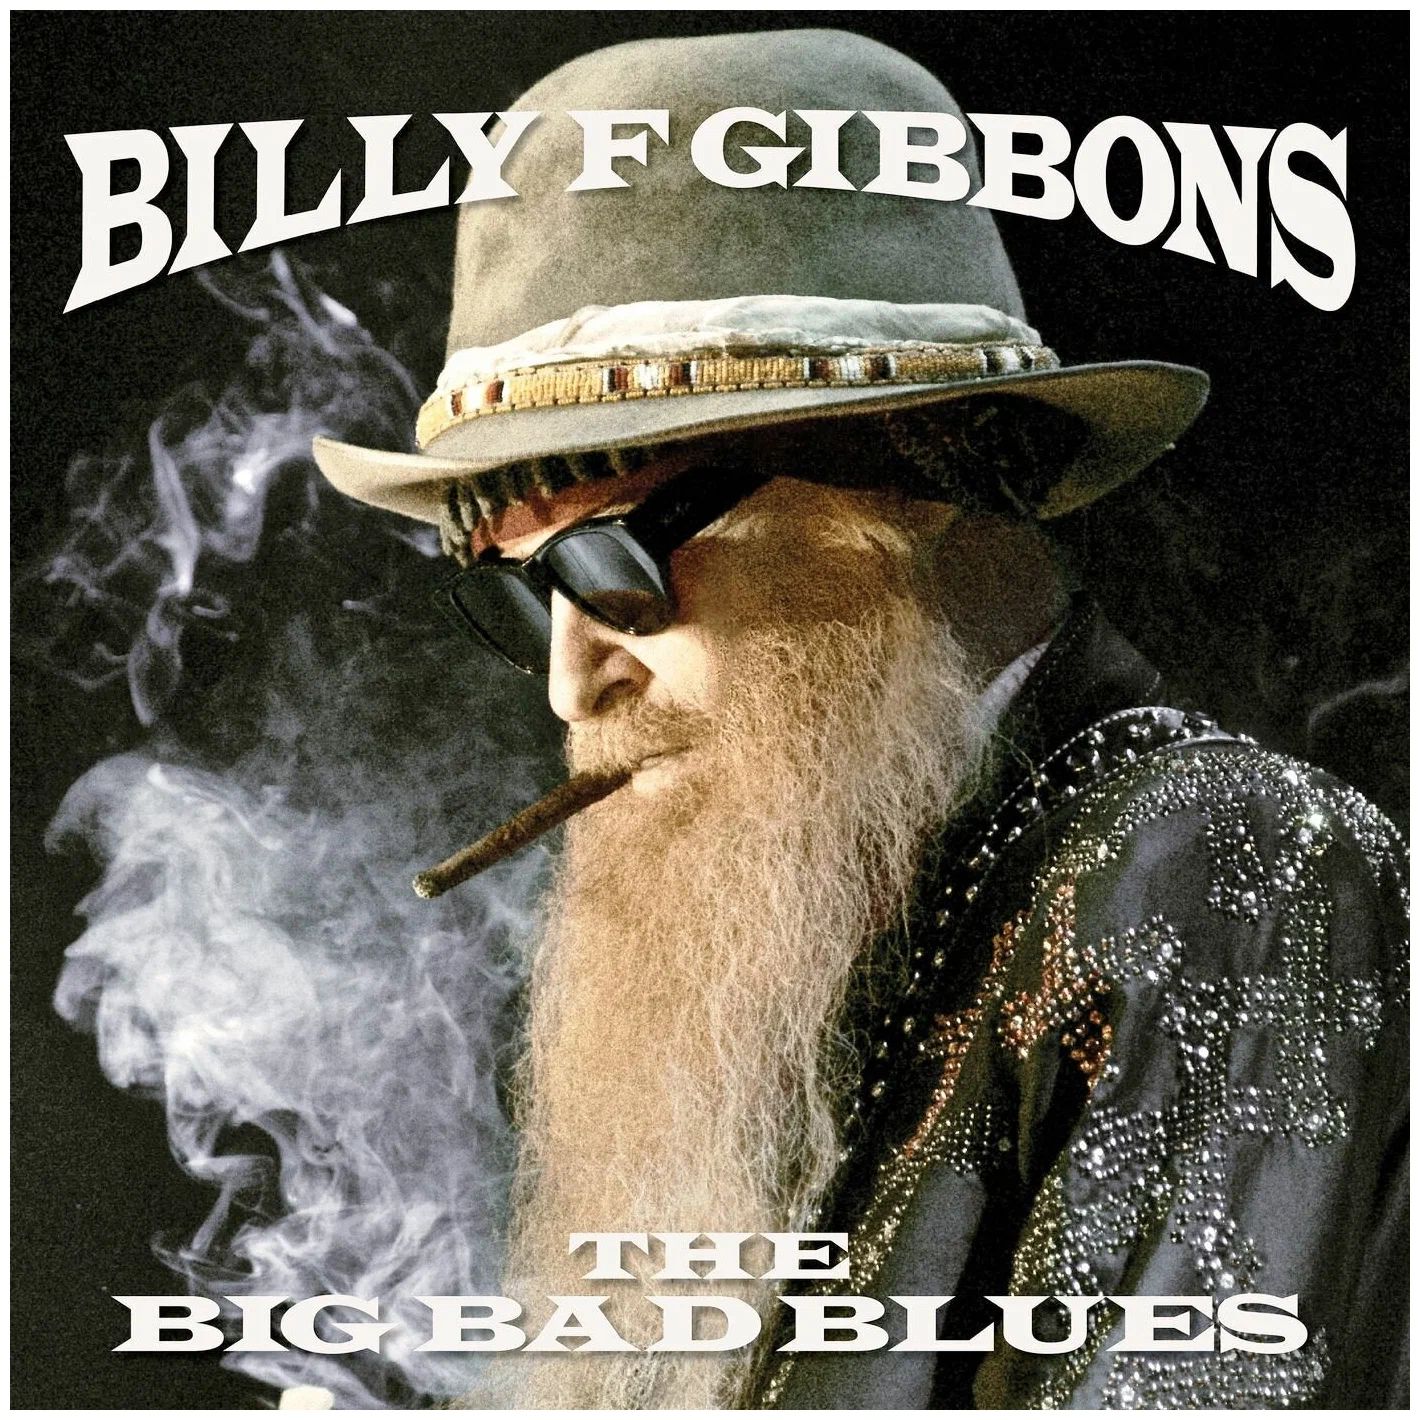 Виниловая пластинка Billy Gibbons, Big Bad Blues (0888072057999) отличное состояние виниловая пластинка billy gibbons big bad blues 0888072057999 отличное состояние